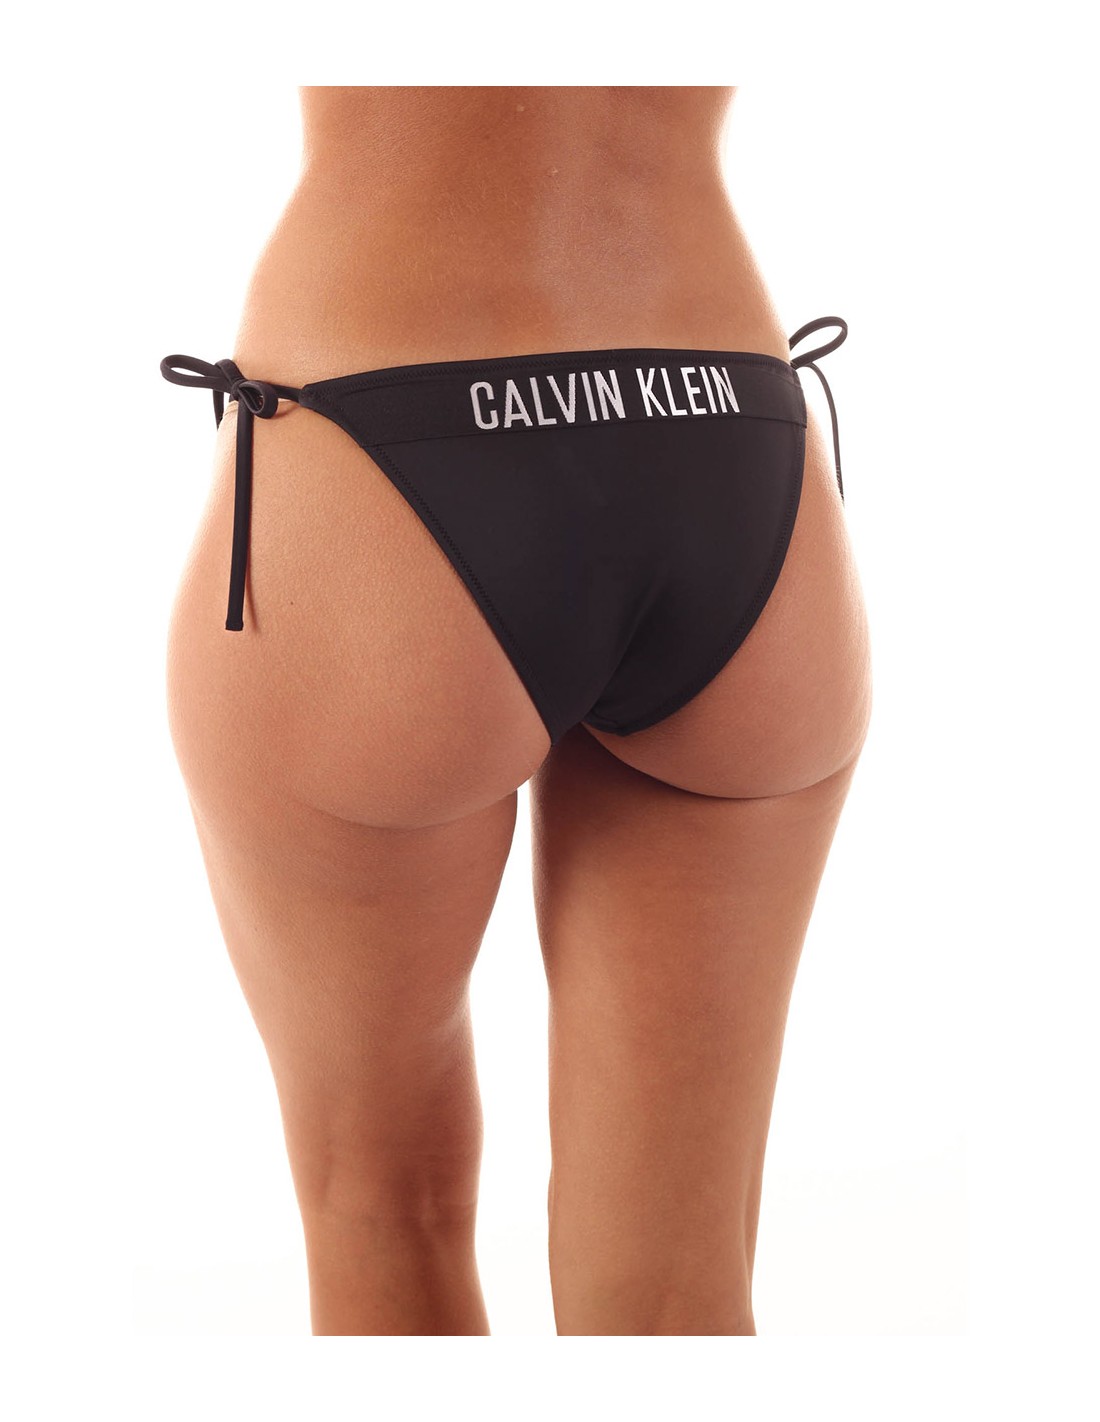 CALVIN KLEIN - Bikini bottom